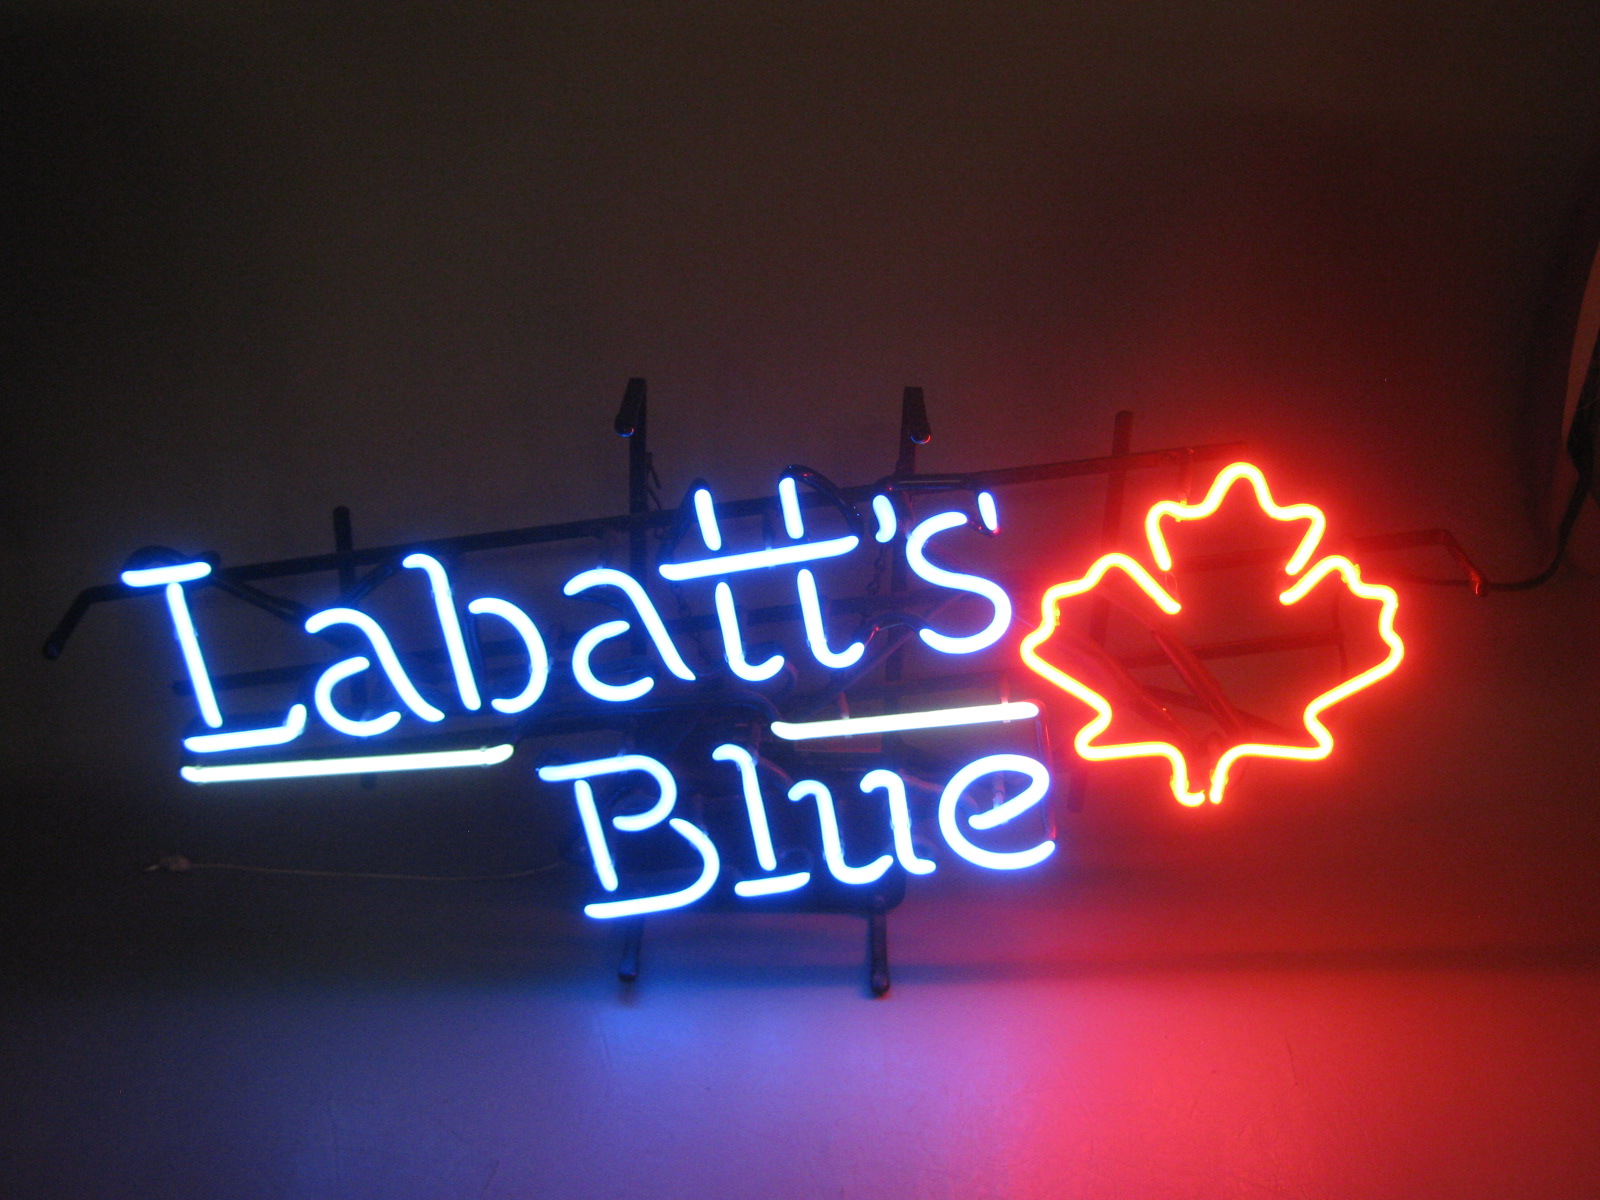 Vtg 1991 Labatts Blue Beer Advertising Electric Neon Light Bar Sign + Maple Leaf